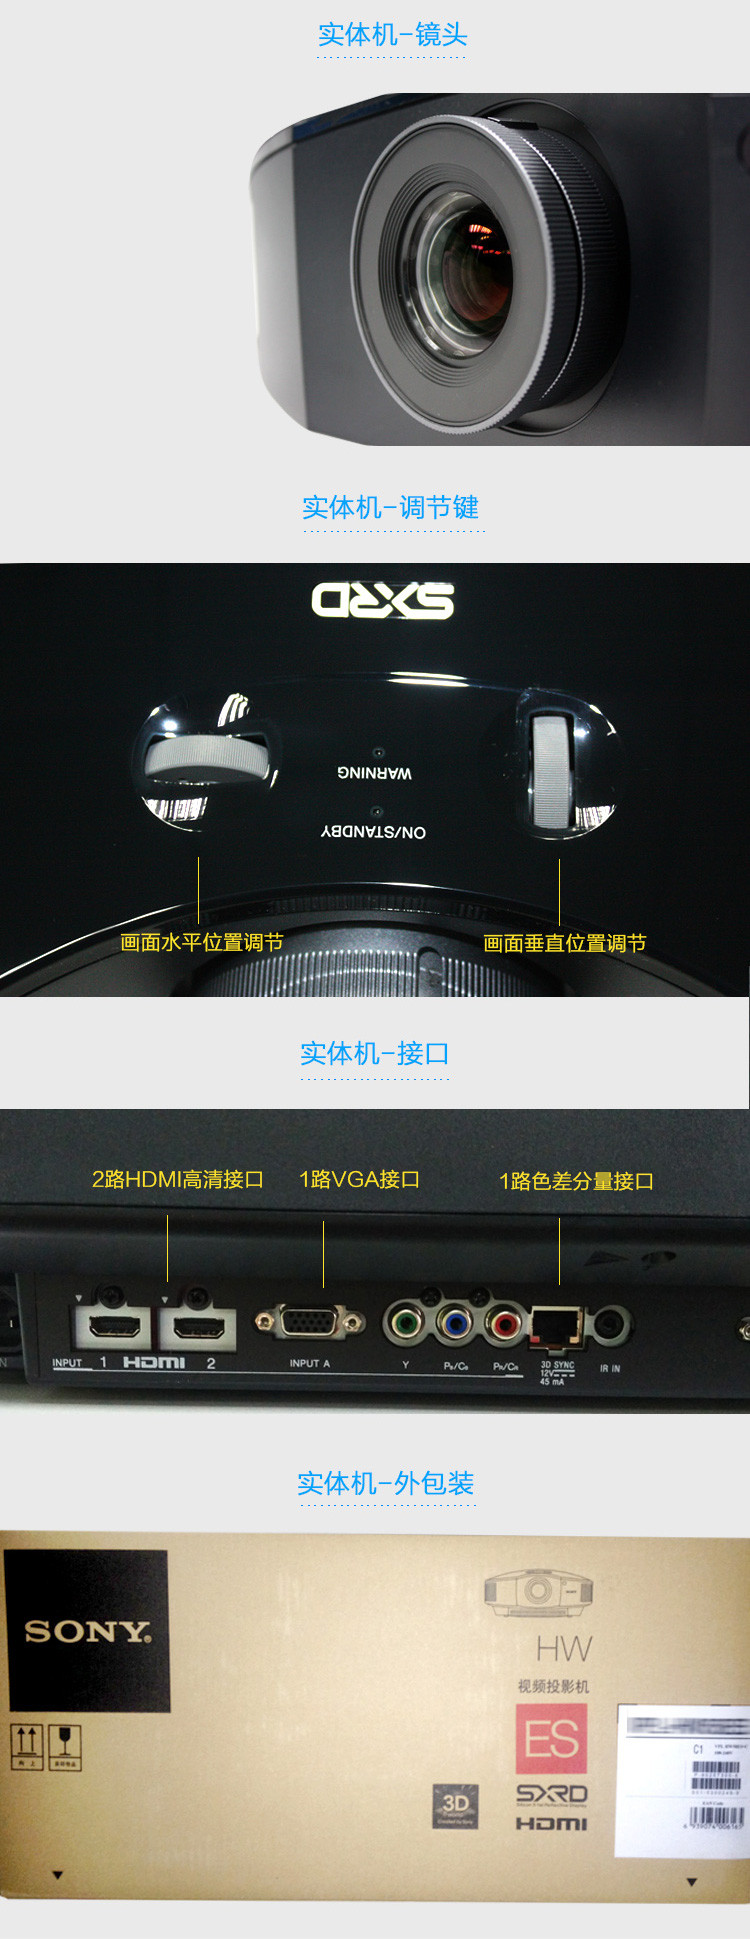 索尼 SONY VPL-HW68全高清1080p 蓝光3D家庭影院投影机